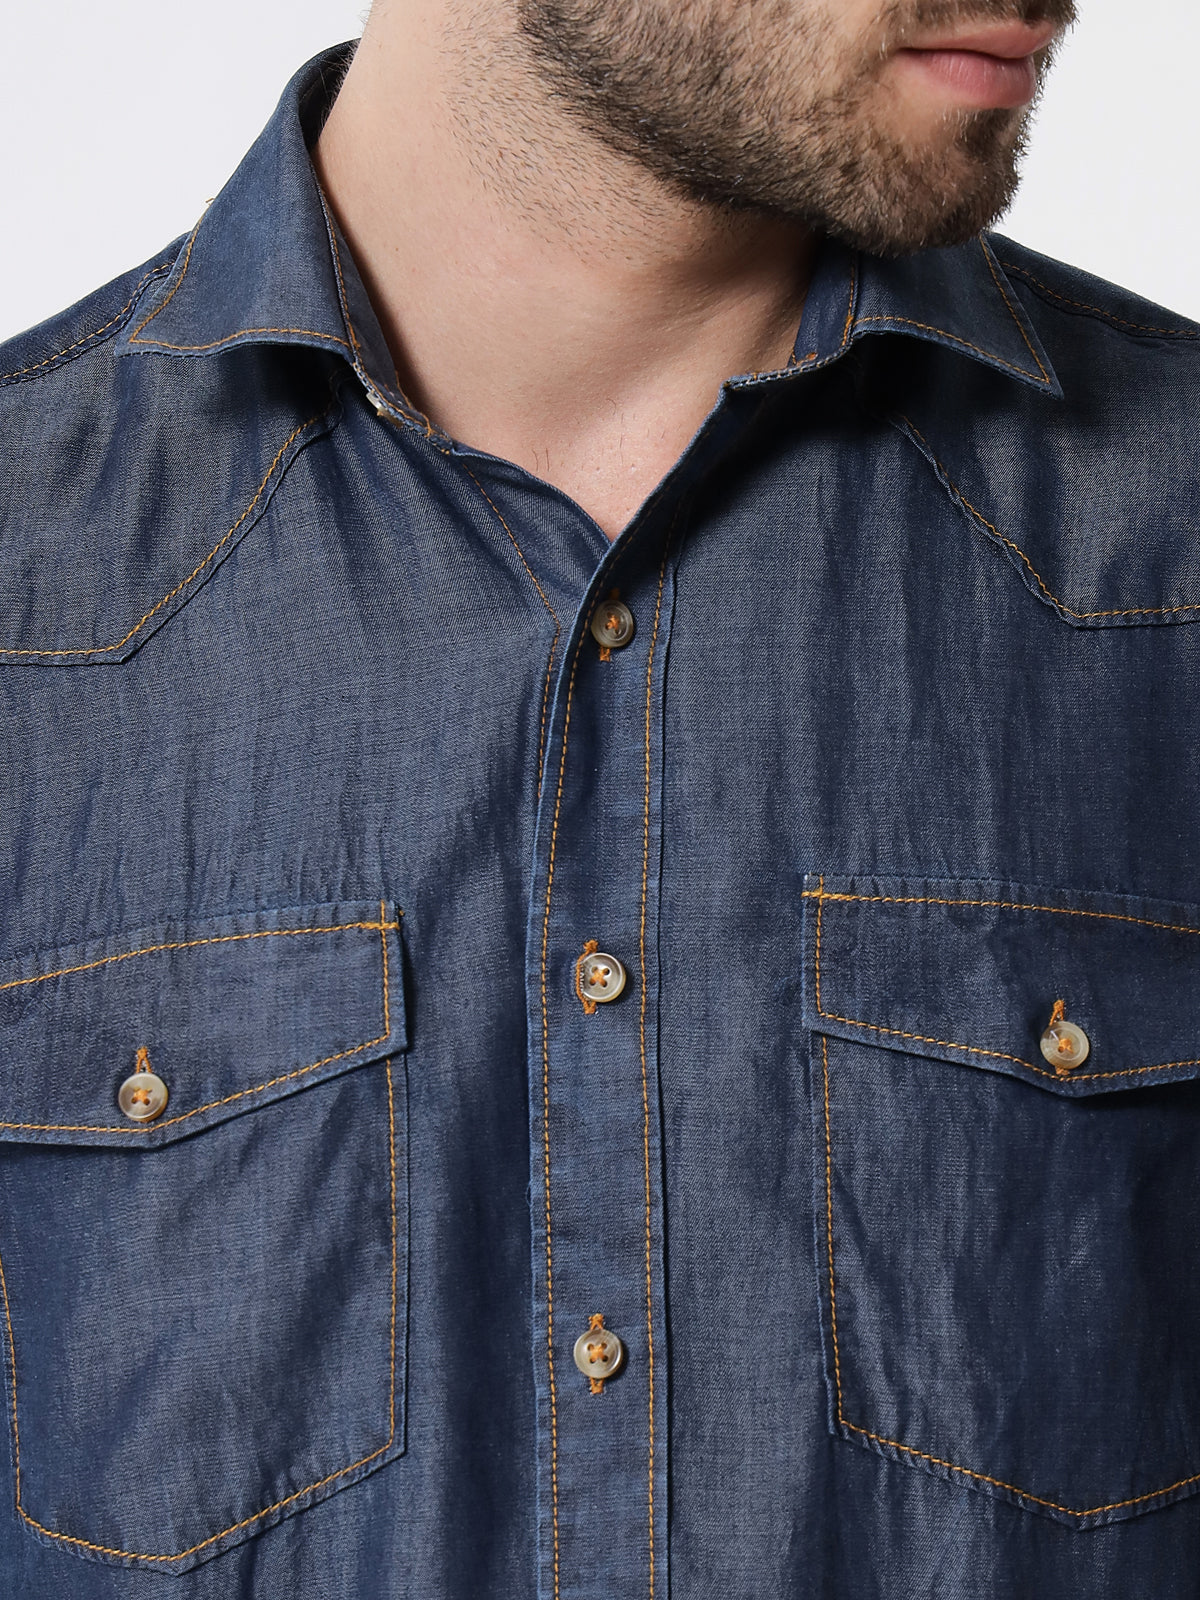 Buy Blue Shirts for Men by DENNISLINGO PREMIUM ATTIRE Online | Ajio.com